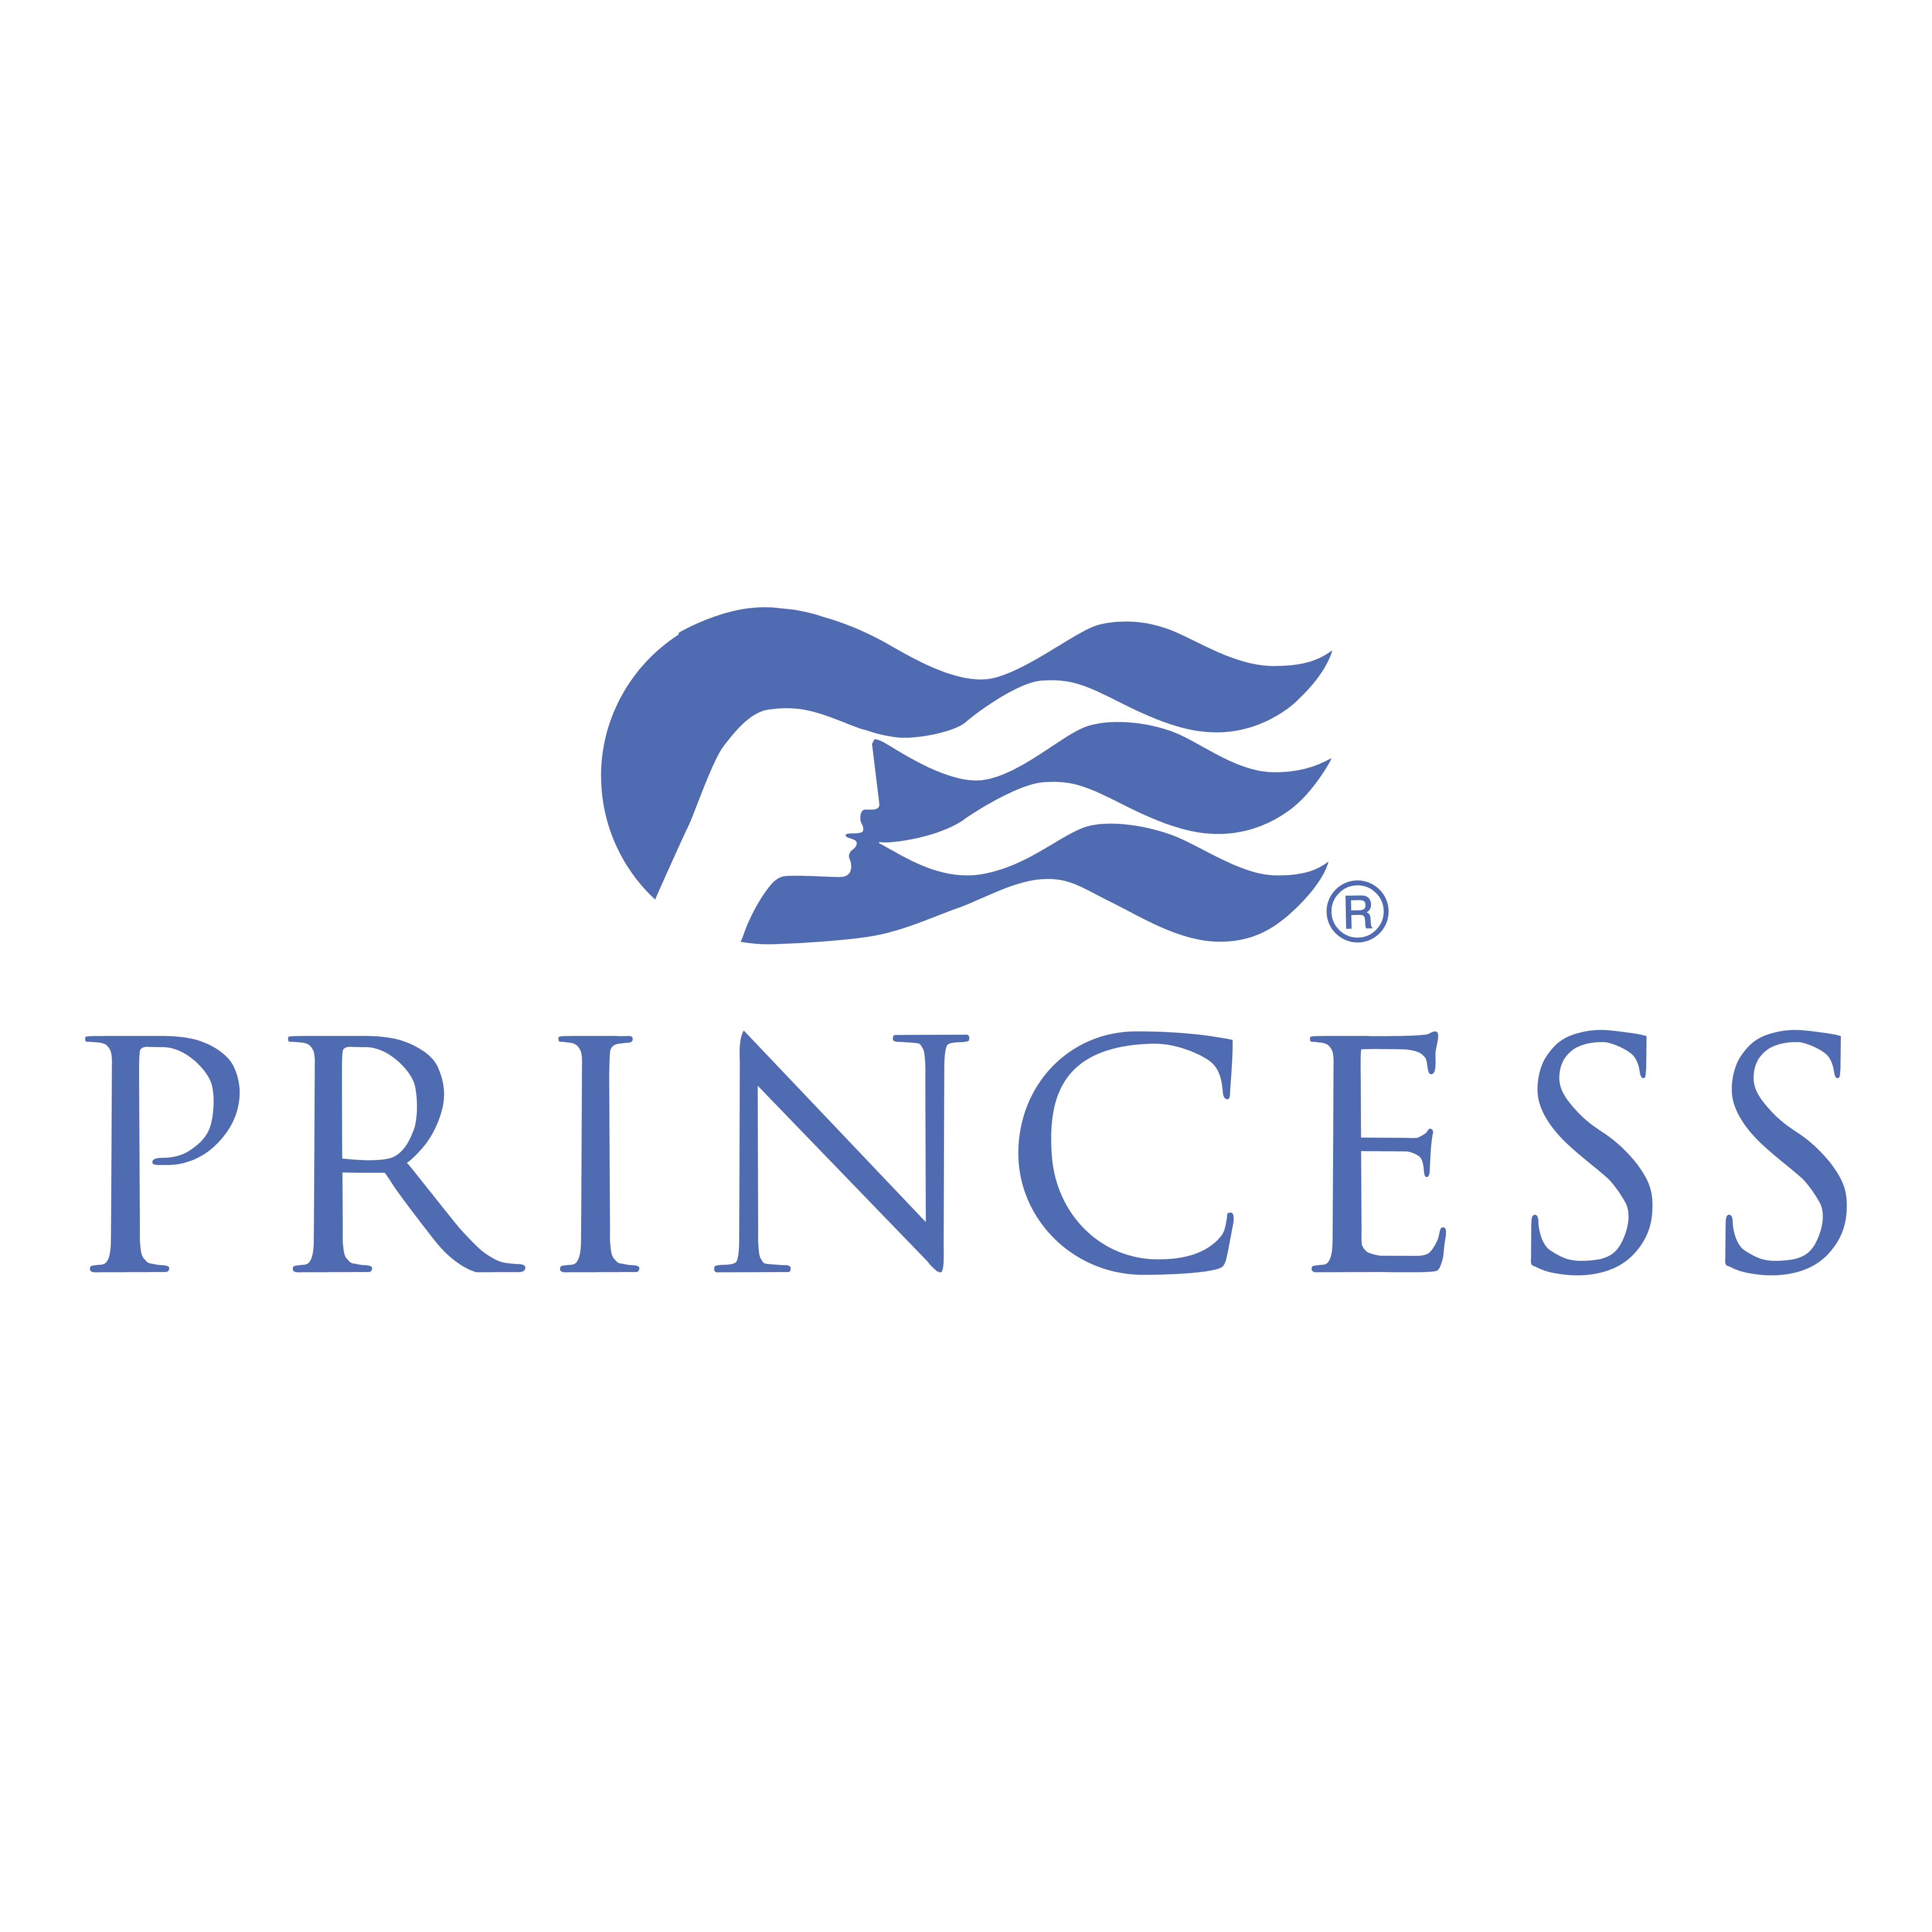 cruise companies logos